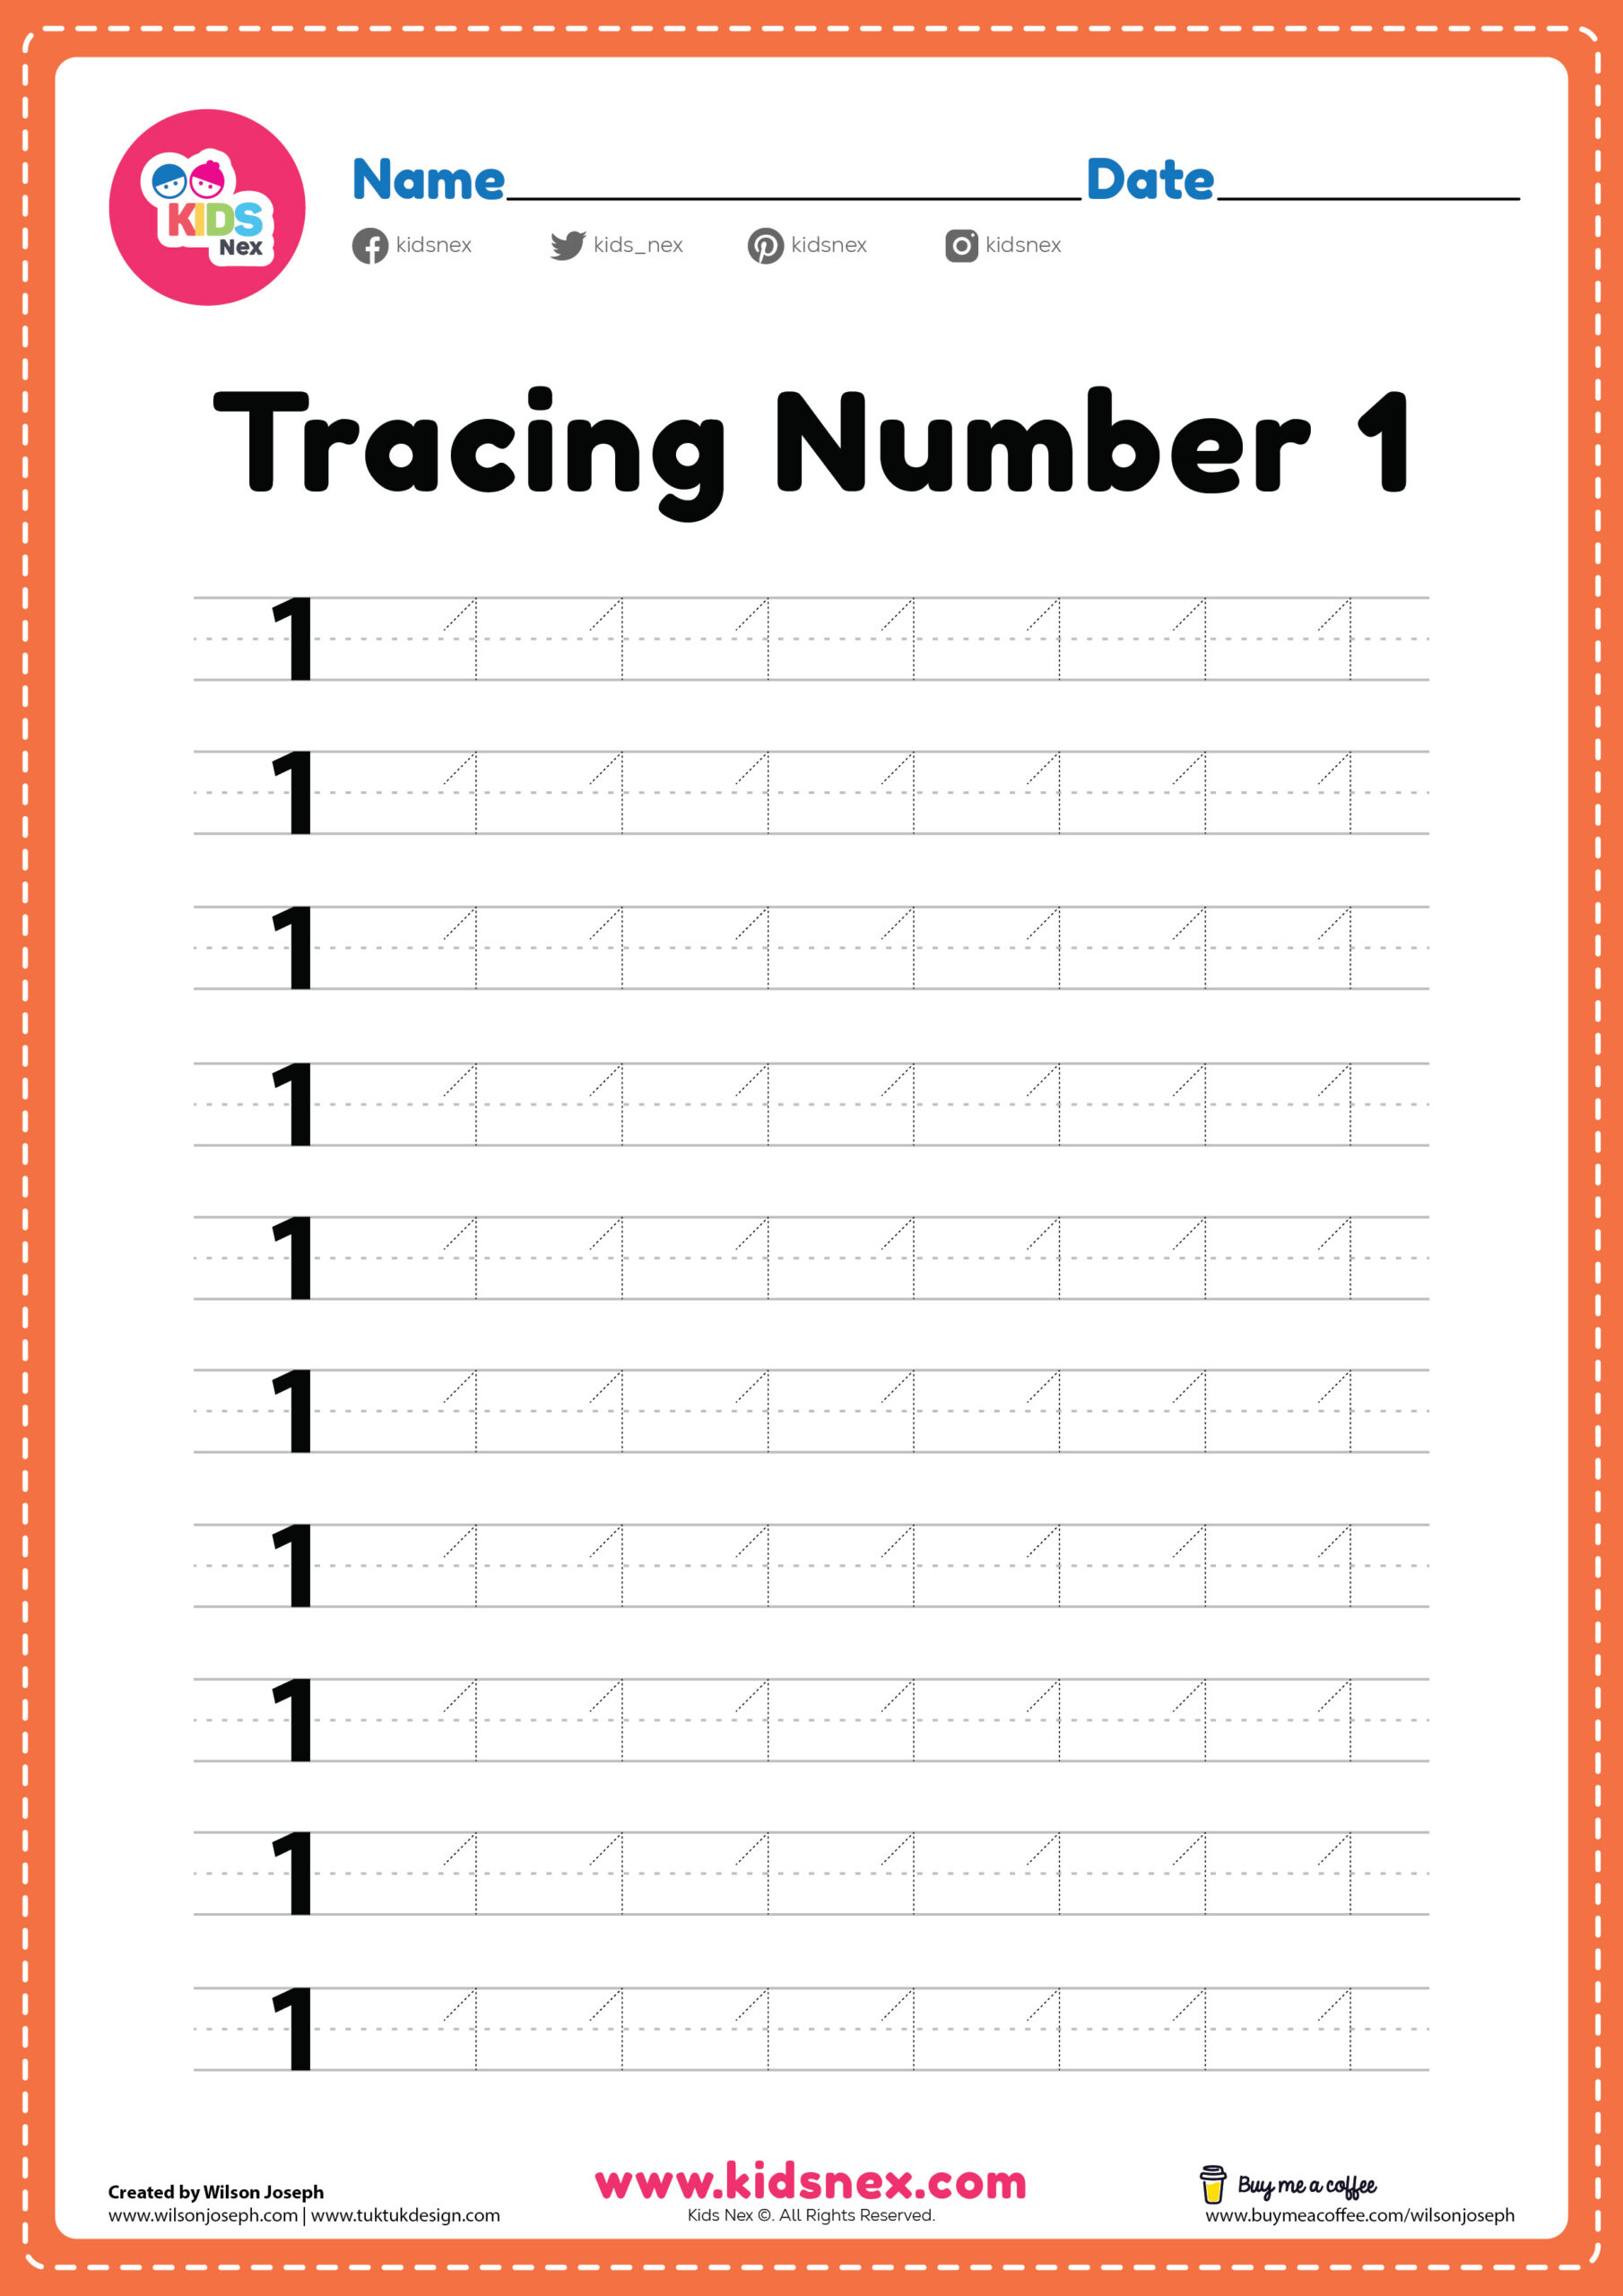 Tracing number 1 worksheet for kindergarten and preschool kids